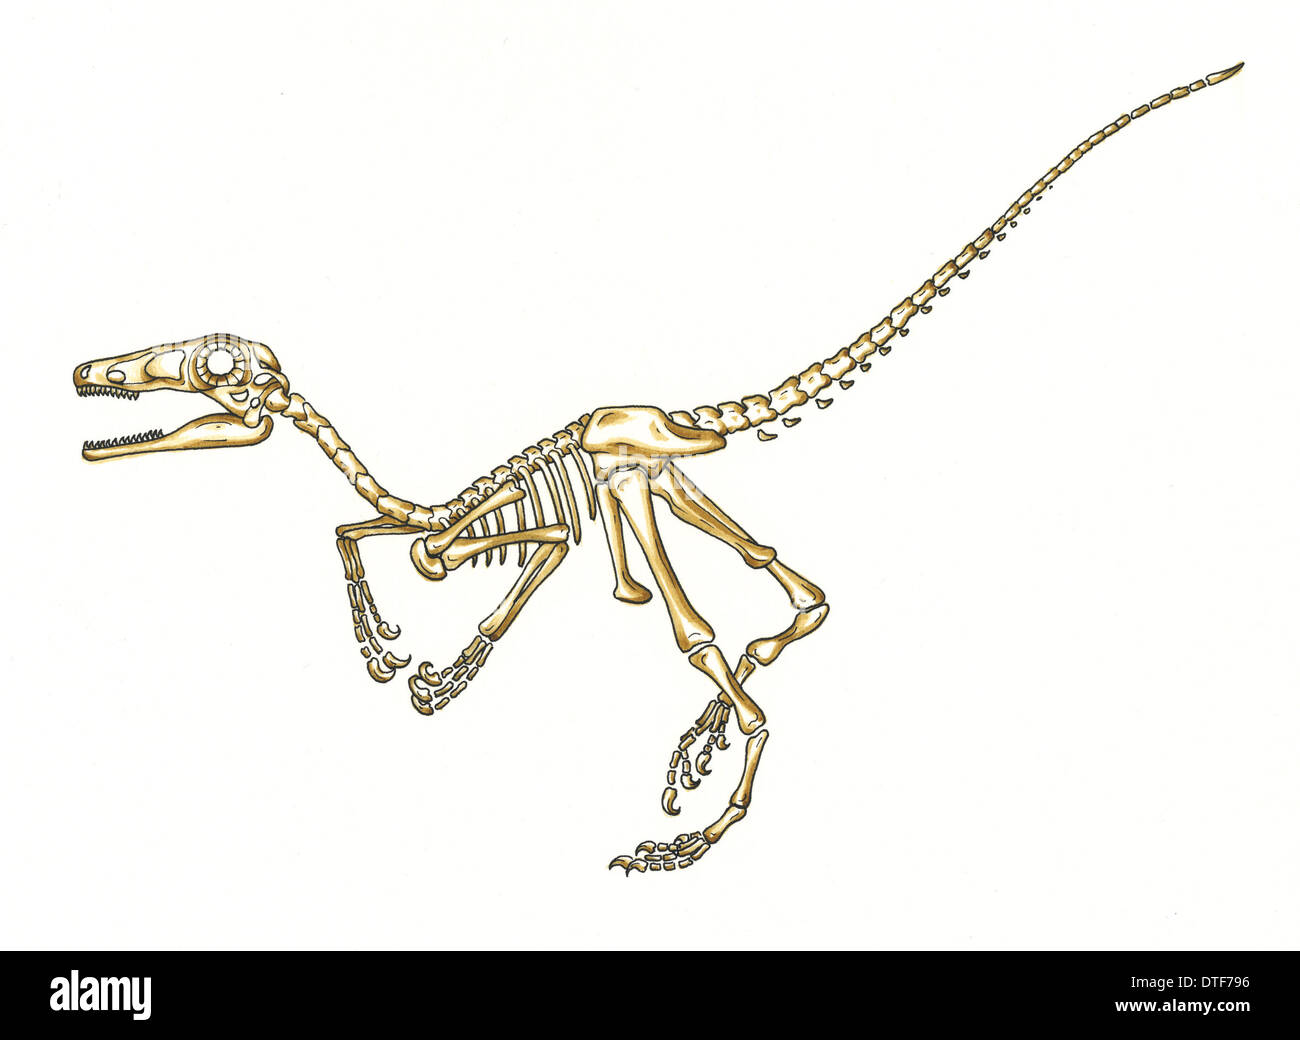 Microraptor skeleton Stock Photo